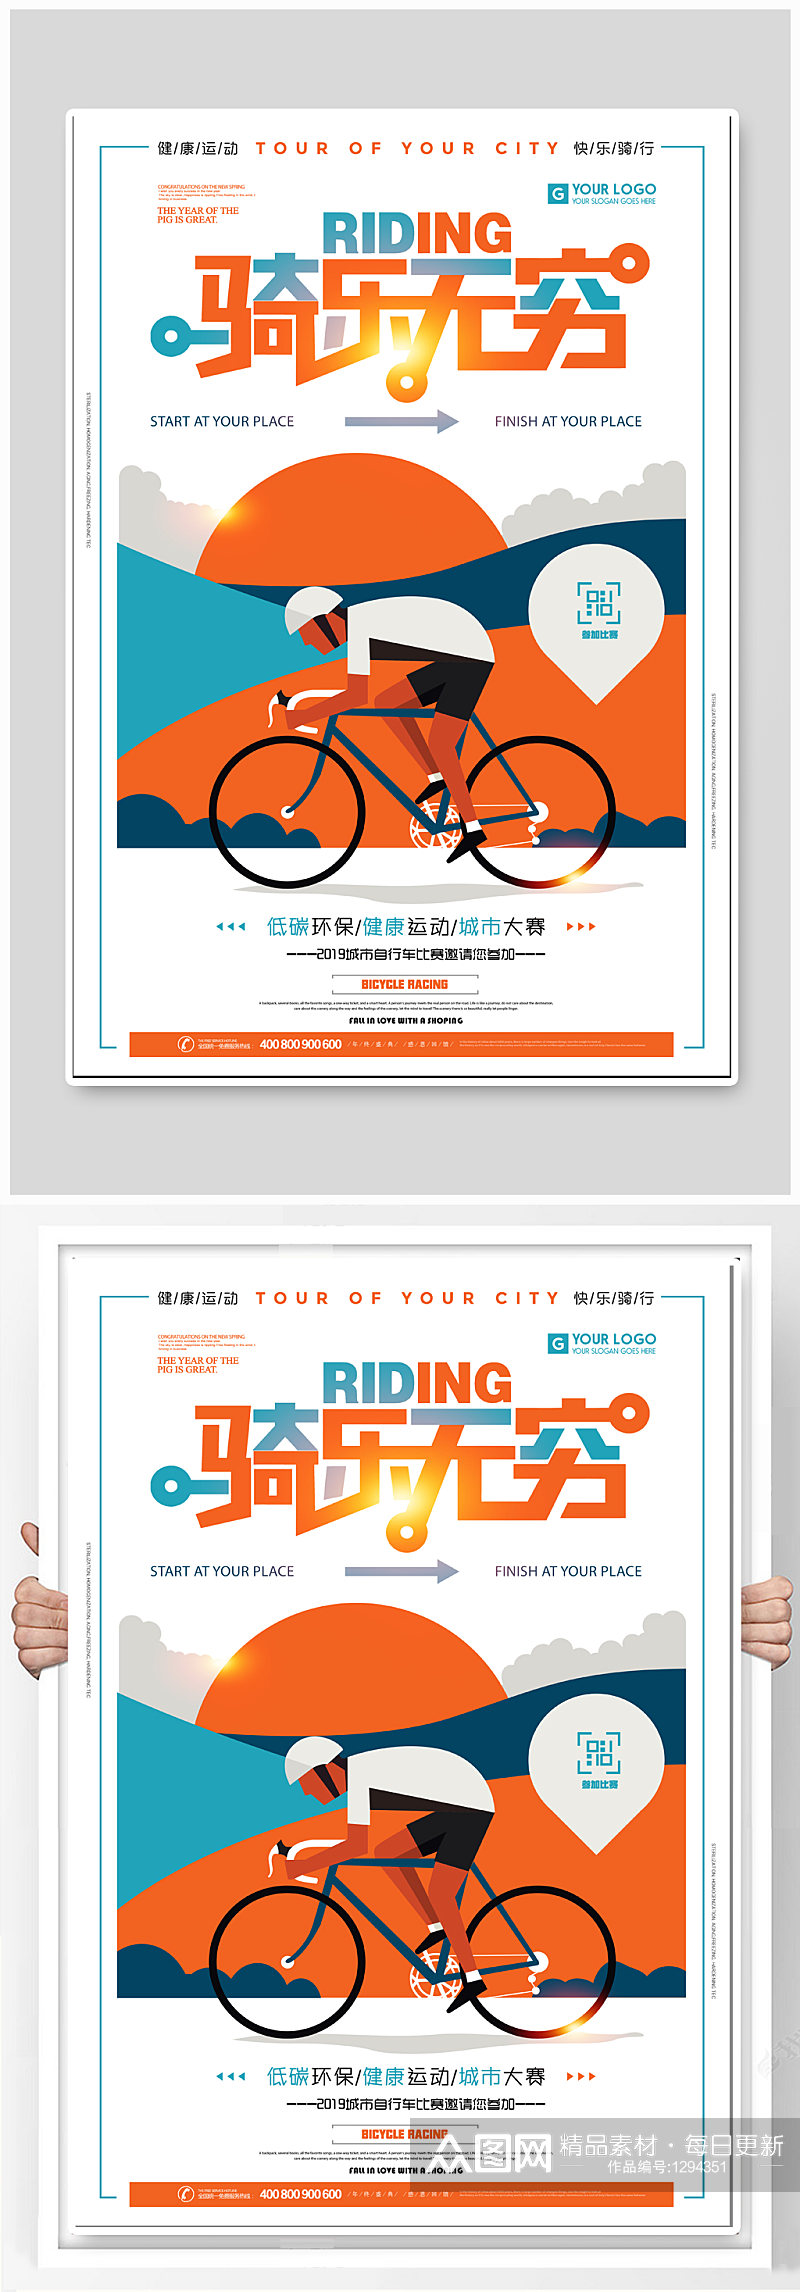 骑行运动宣传海报素材